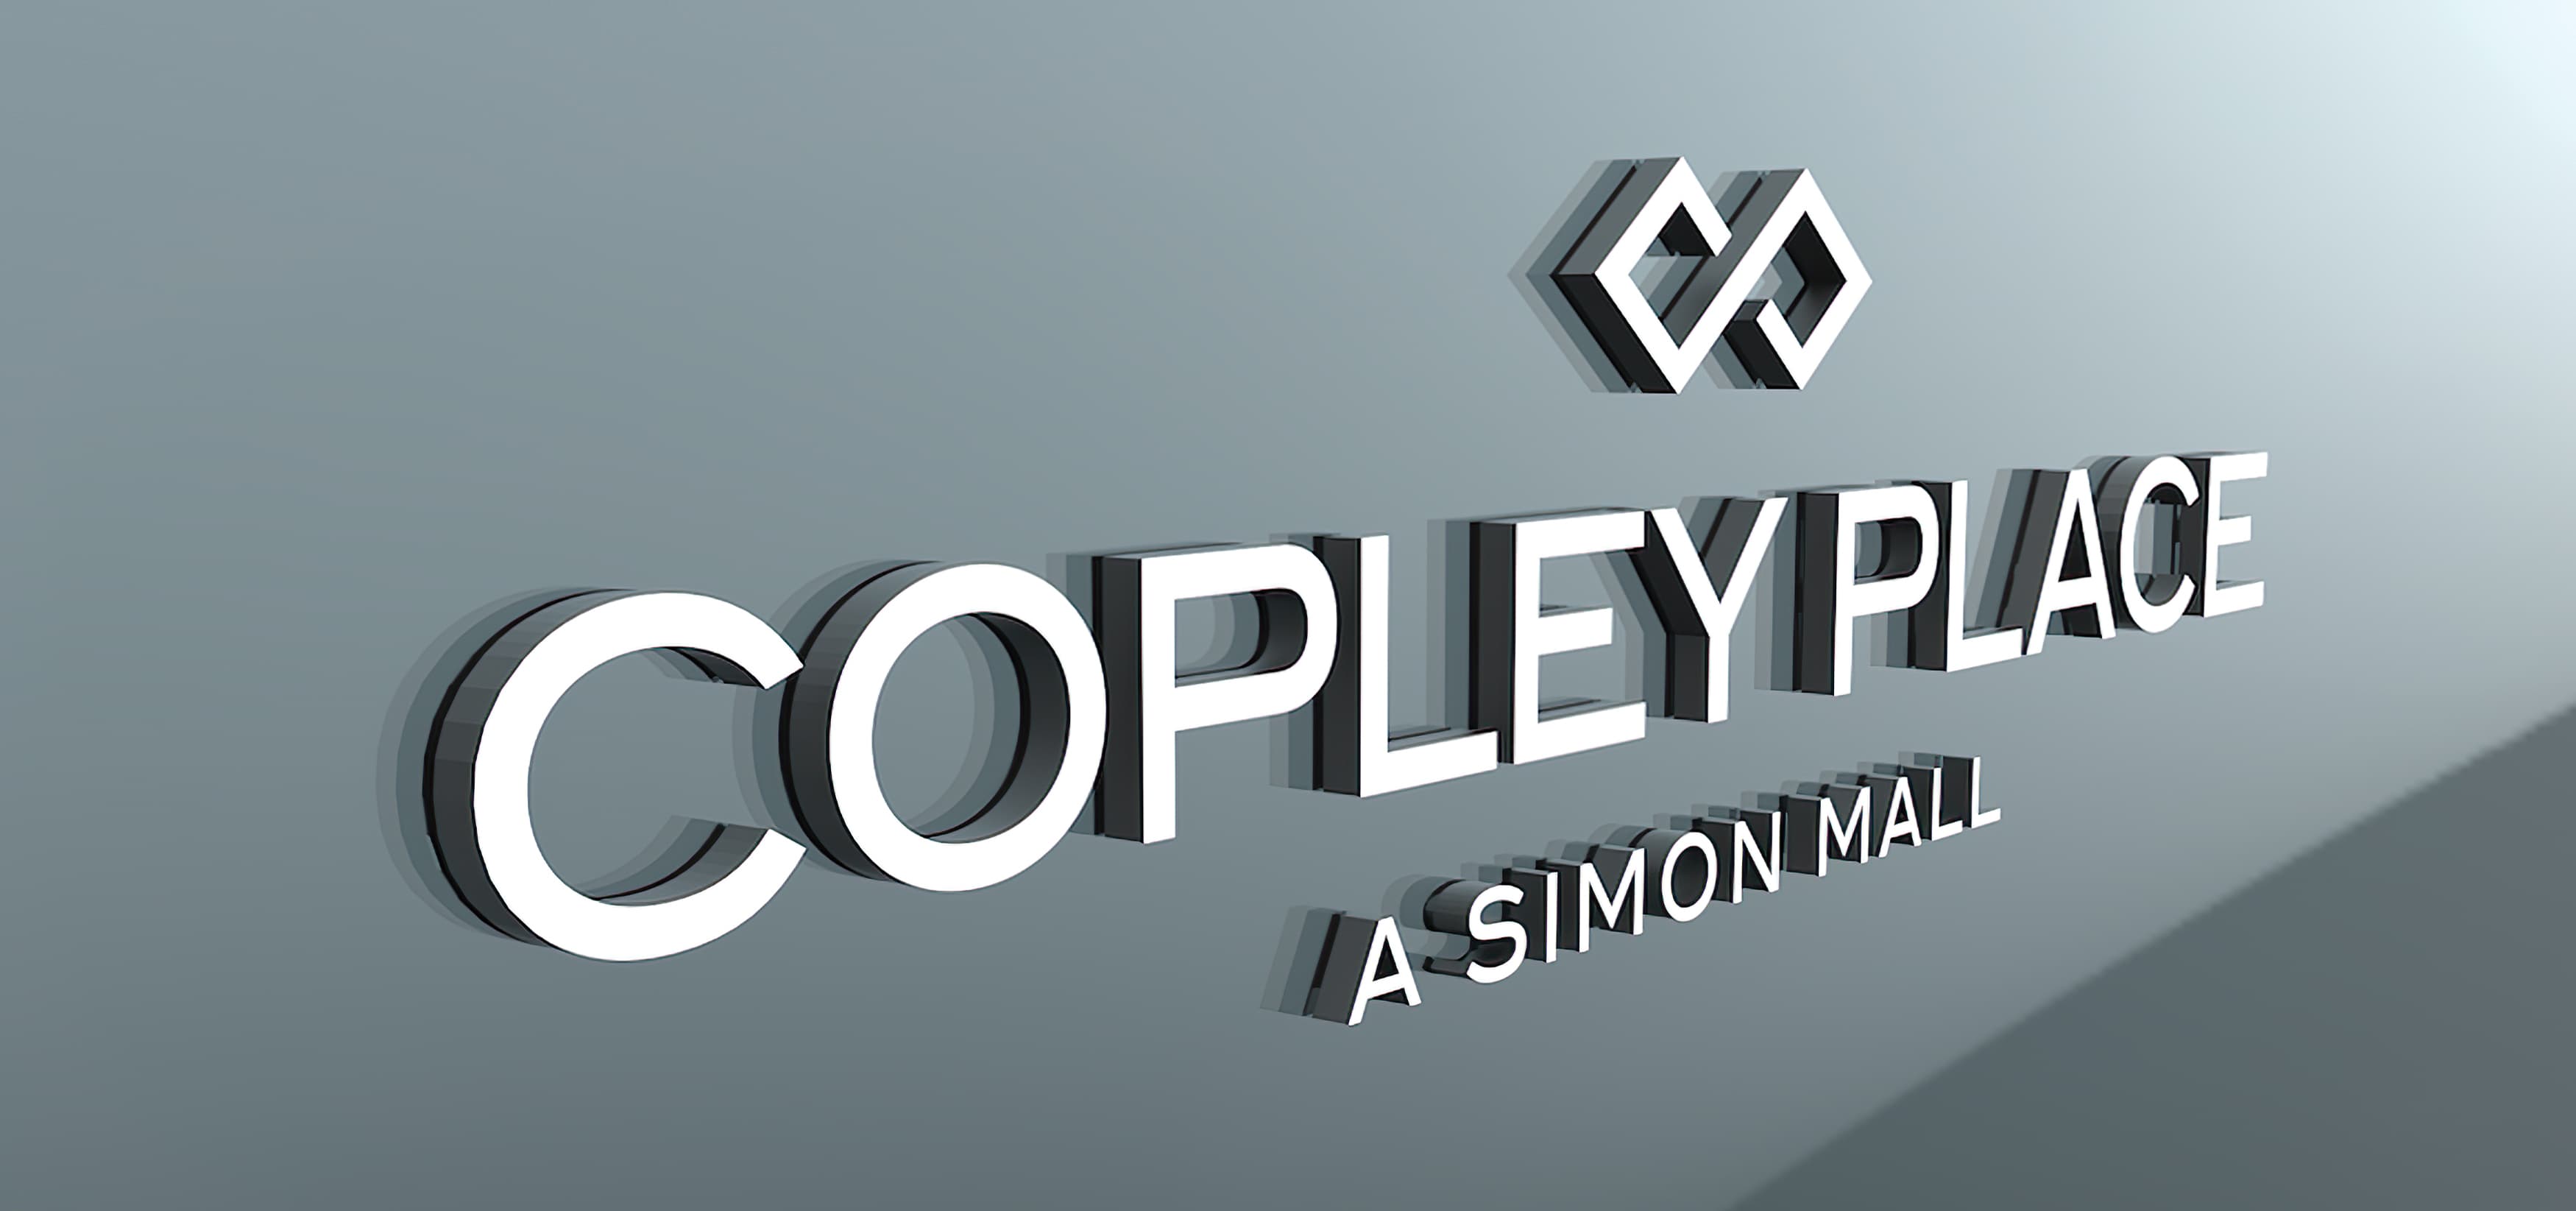 Copley Place · RSM Design